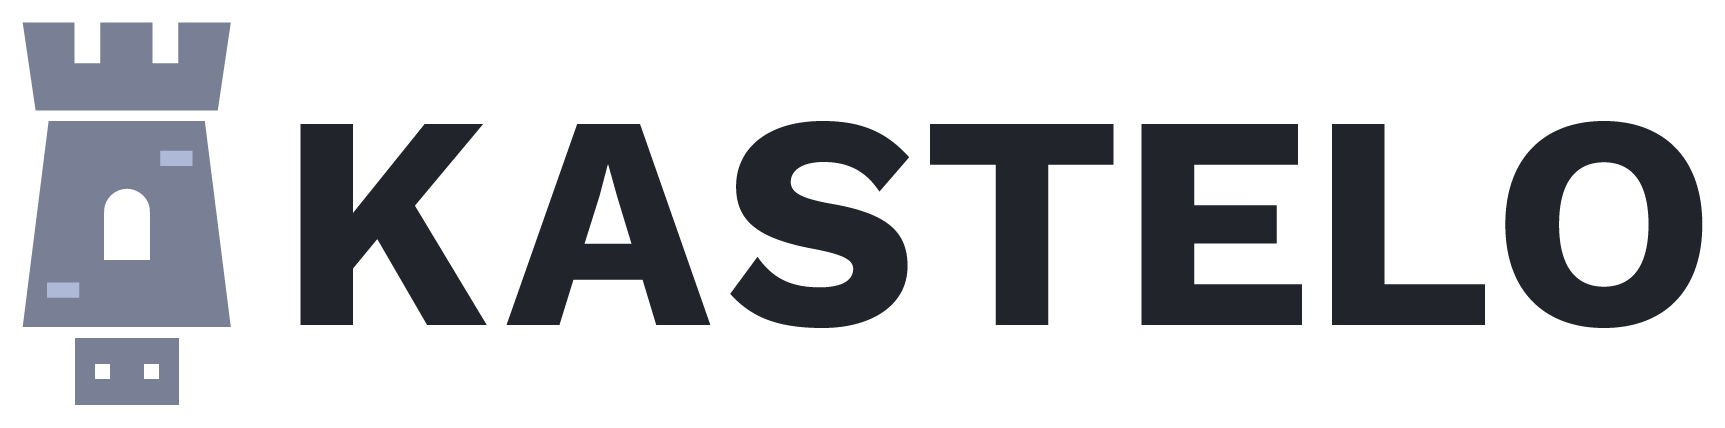 Kastelo Logo